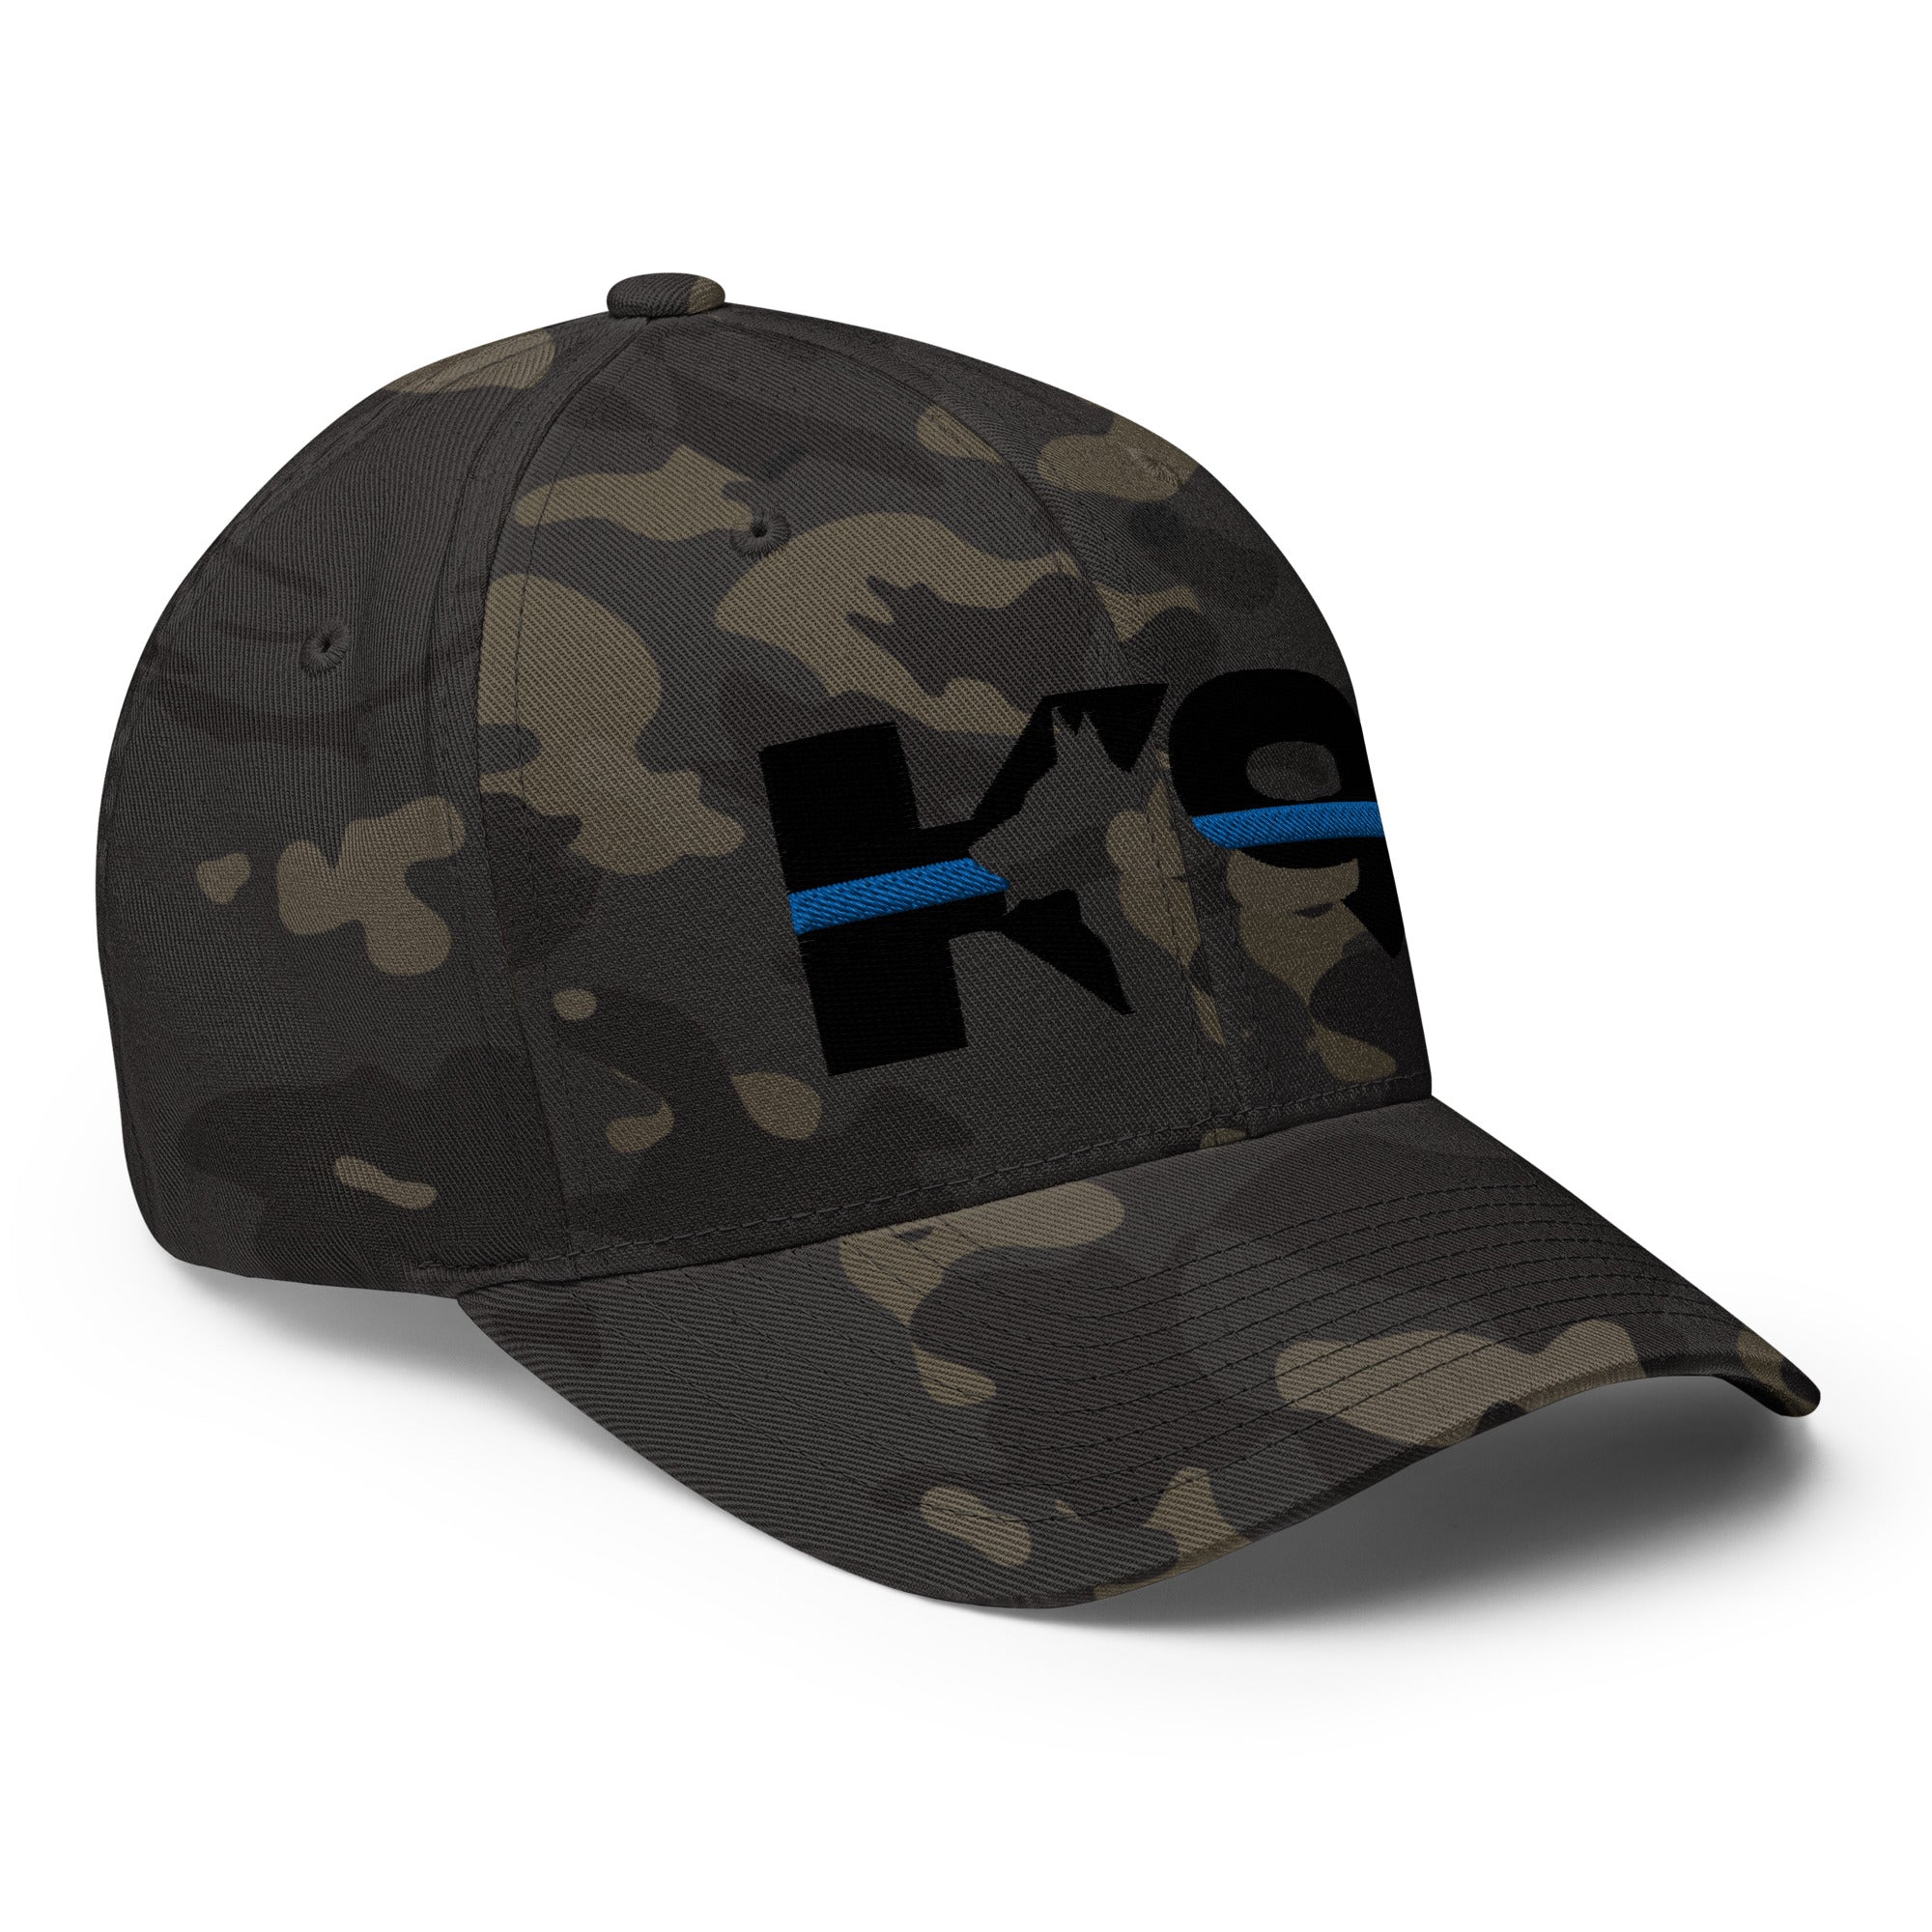 K-9 Thin Blue Line Flexfit Hat-Hats-MultiCam Black-S/M-Ardent Patriot Apparel Co.